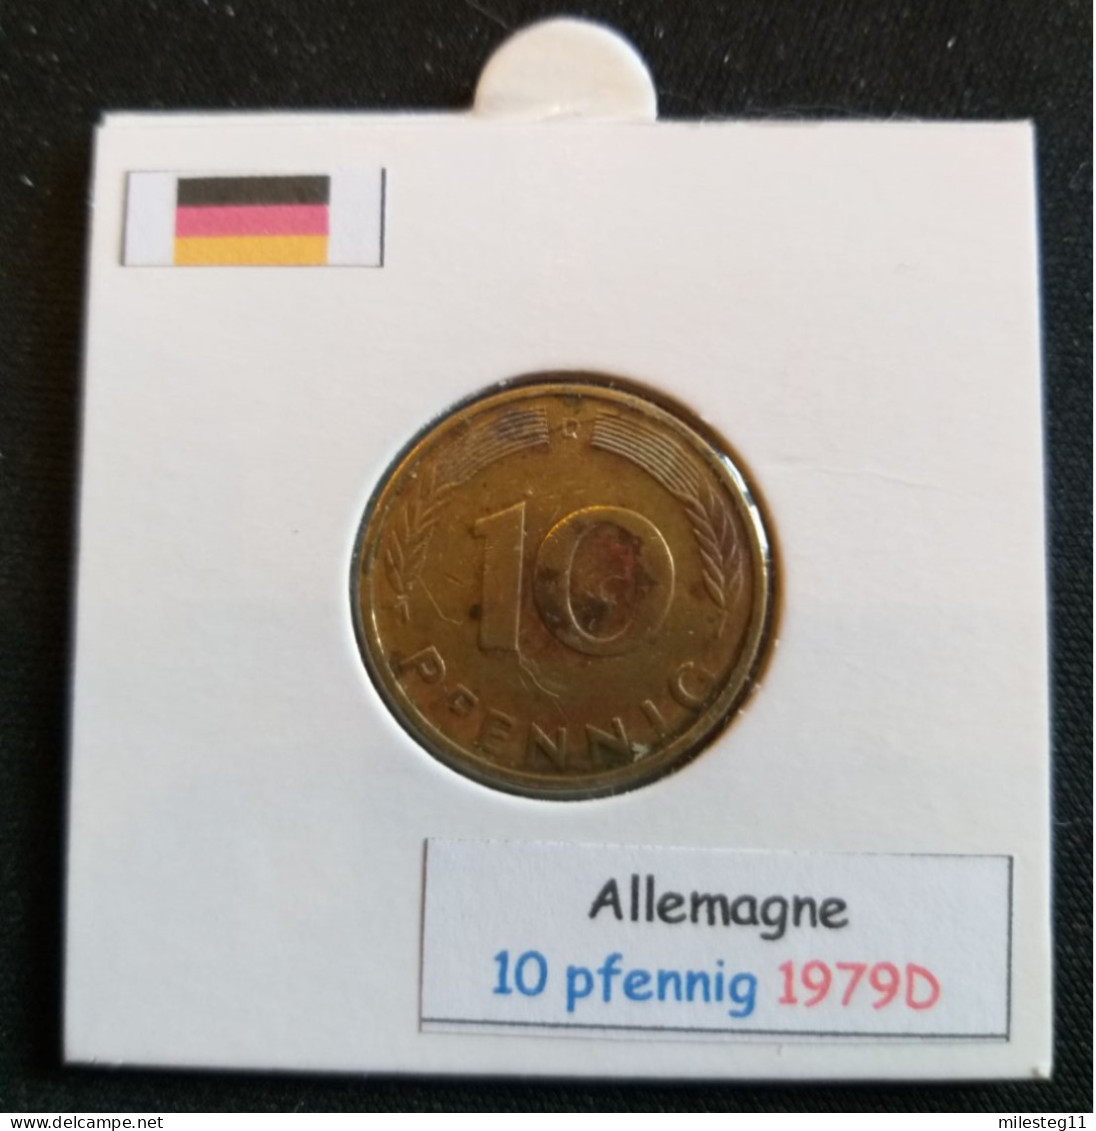 Allemagne 10 Pfennig 1979D - 10 Pfennig